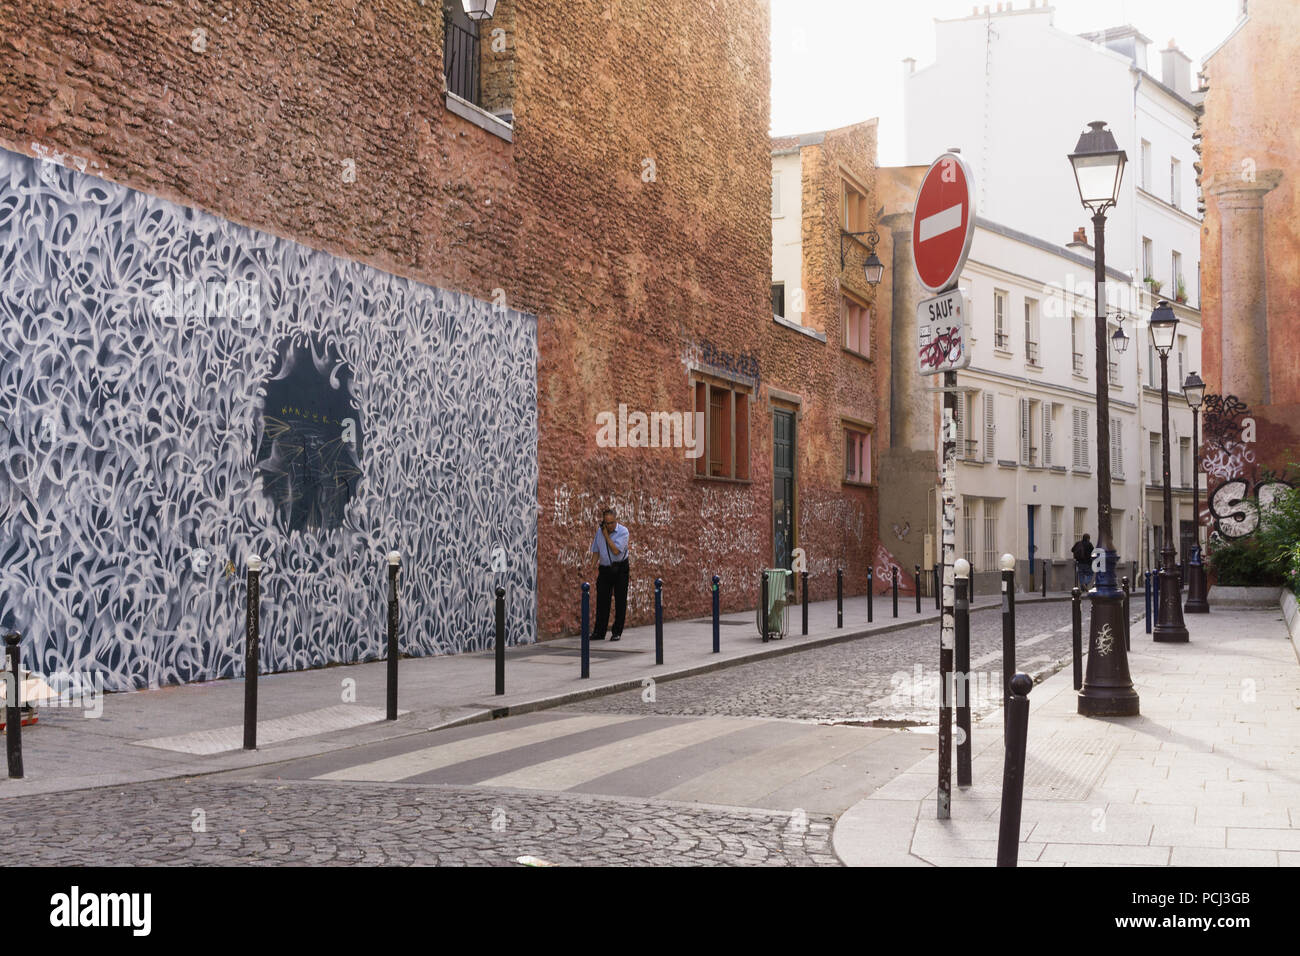 Paris Street Scene - Ecke Rue Legouve und Rue Lucien Sampaix, ein Mann spricht auf dem Telefon neben der Straße Wandbild. Frankreich, Europa. Stockfoto